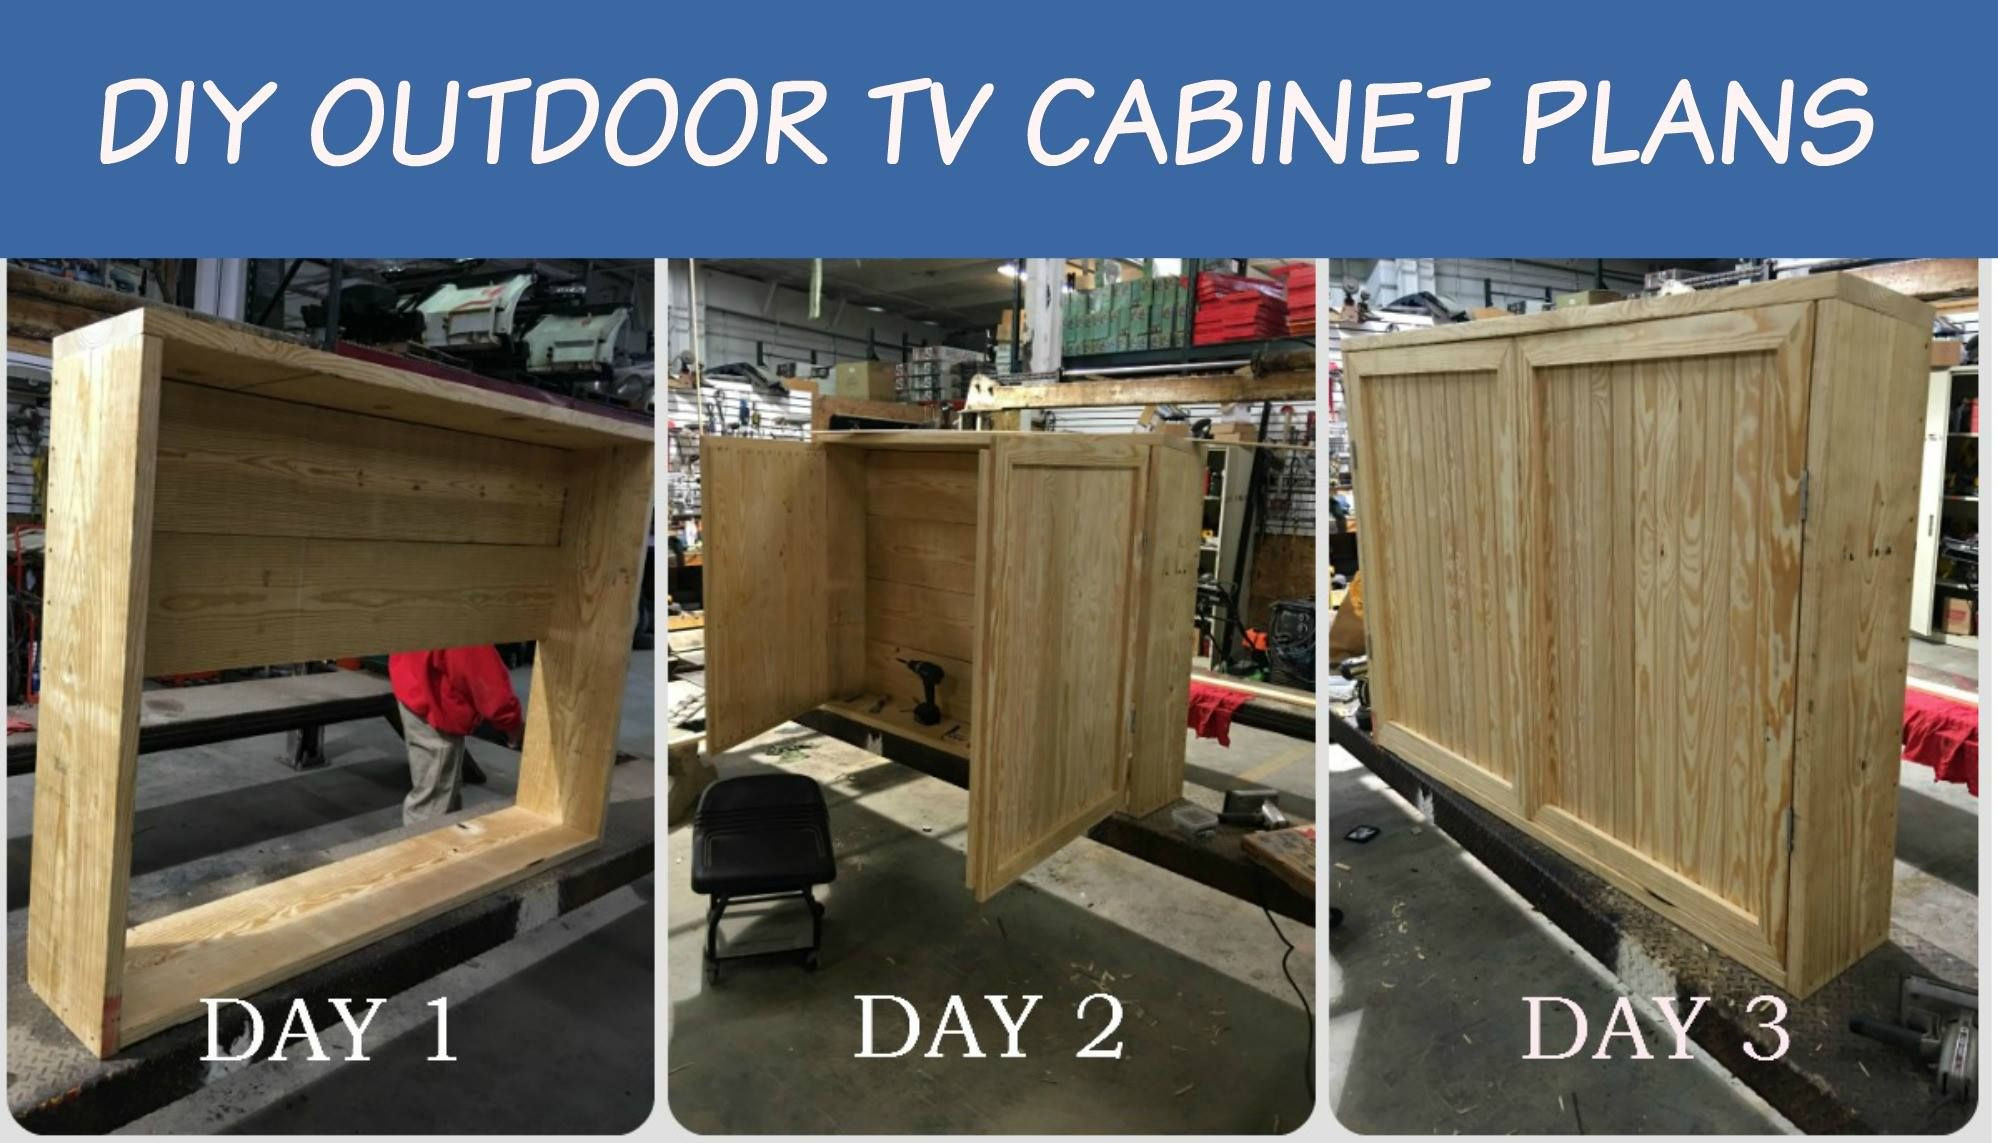 Diy Outdoor Tv Cabinet Plans Best Of Outdoor Tv Cabinet With Double Doors Building Plan Of Diy Outdoor Tv Cabinet Plans 